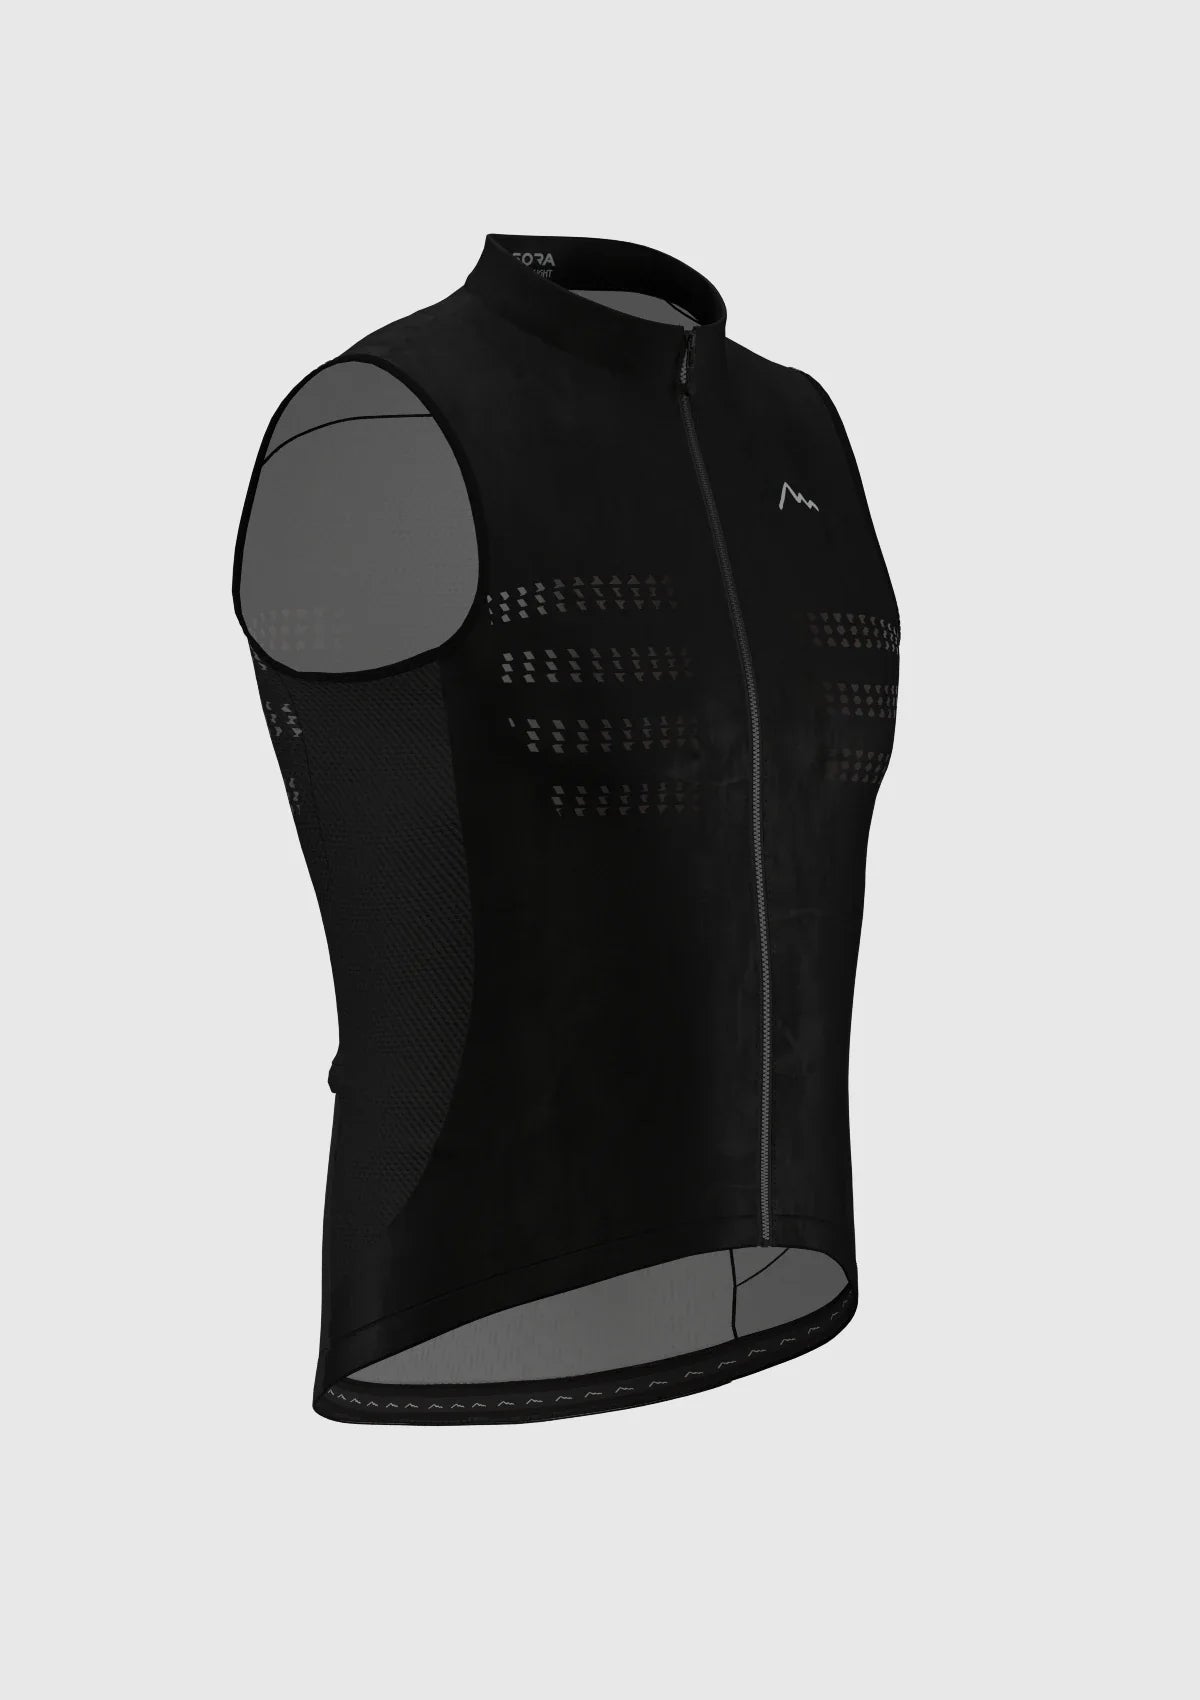 Ultra Light Black cycling vest